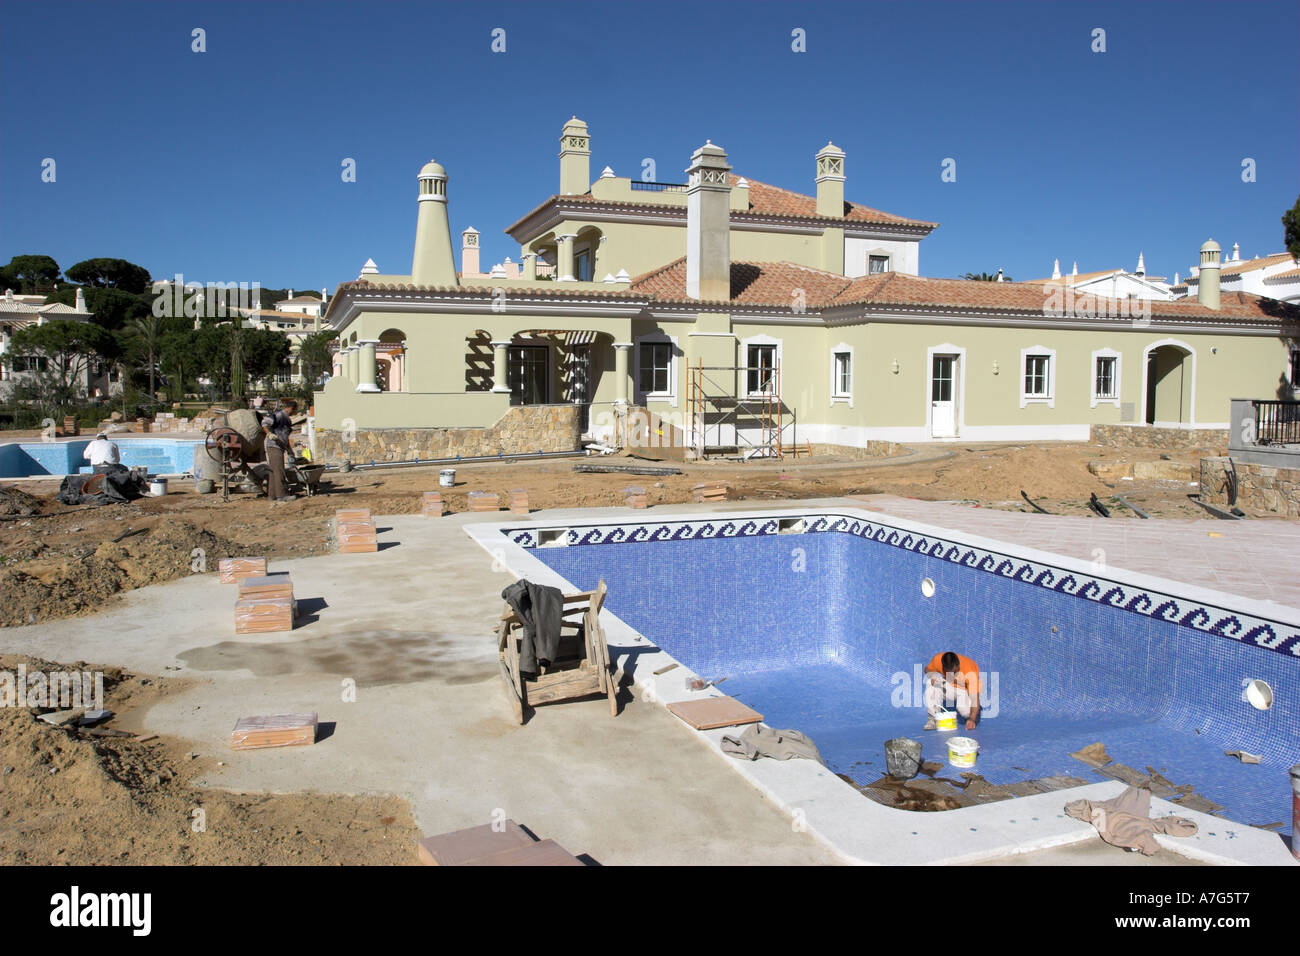 Le développement de luxe d'une toute nouvelle villa avec une grande piscine et une terrasse sur l'Algarve au Portugal. Banque D'Images